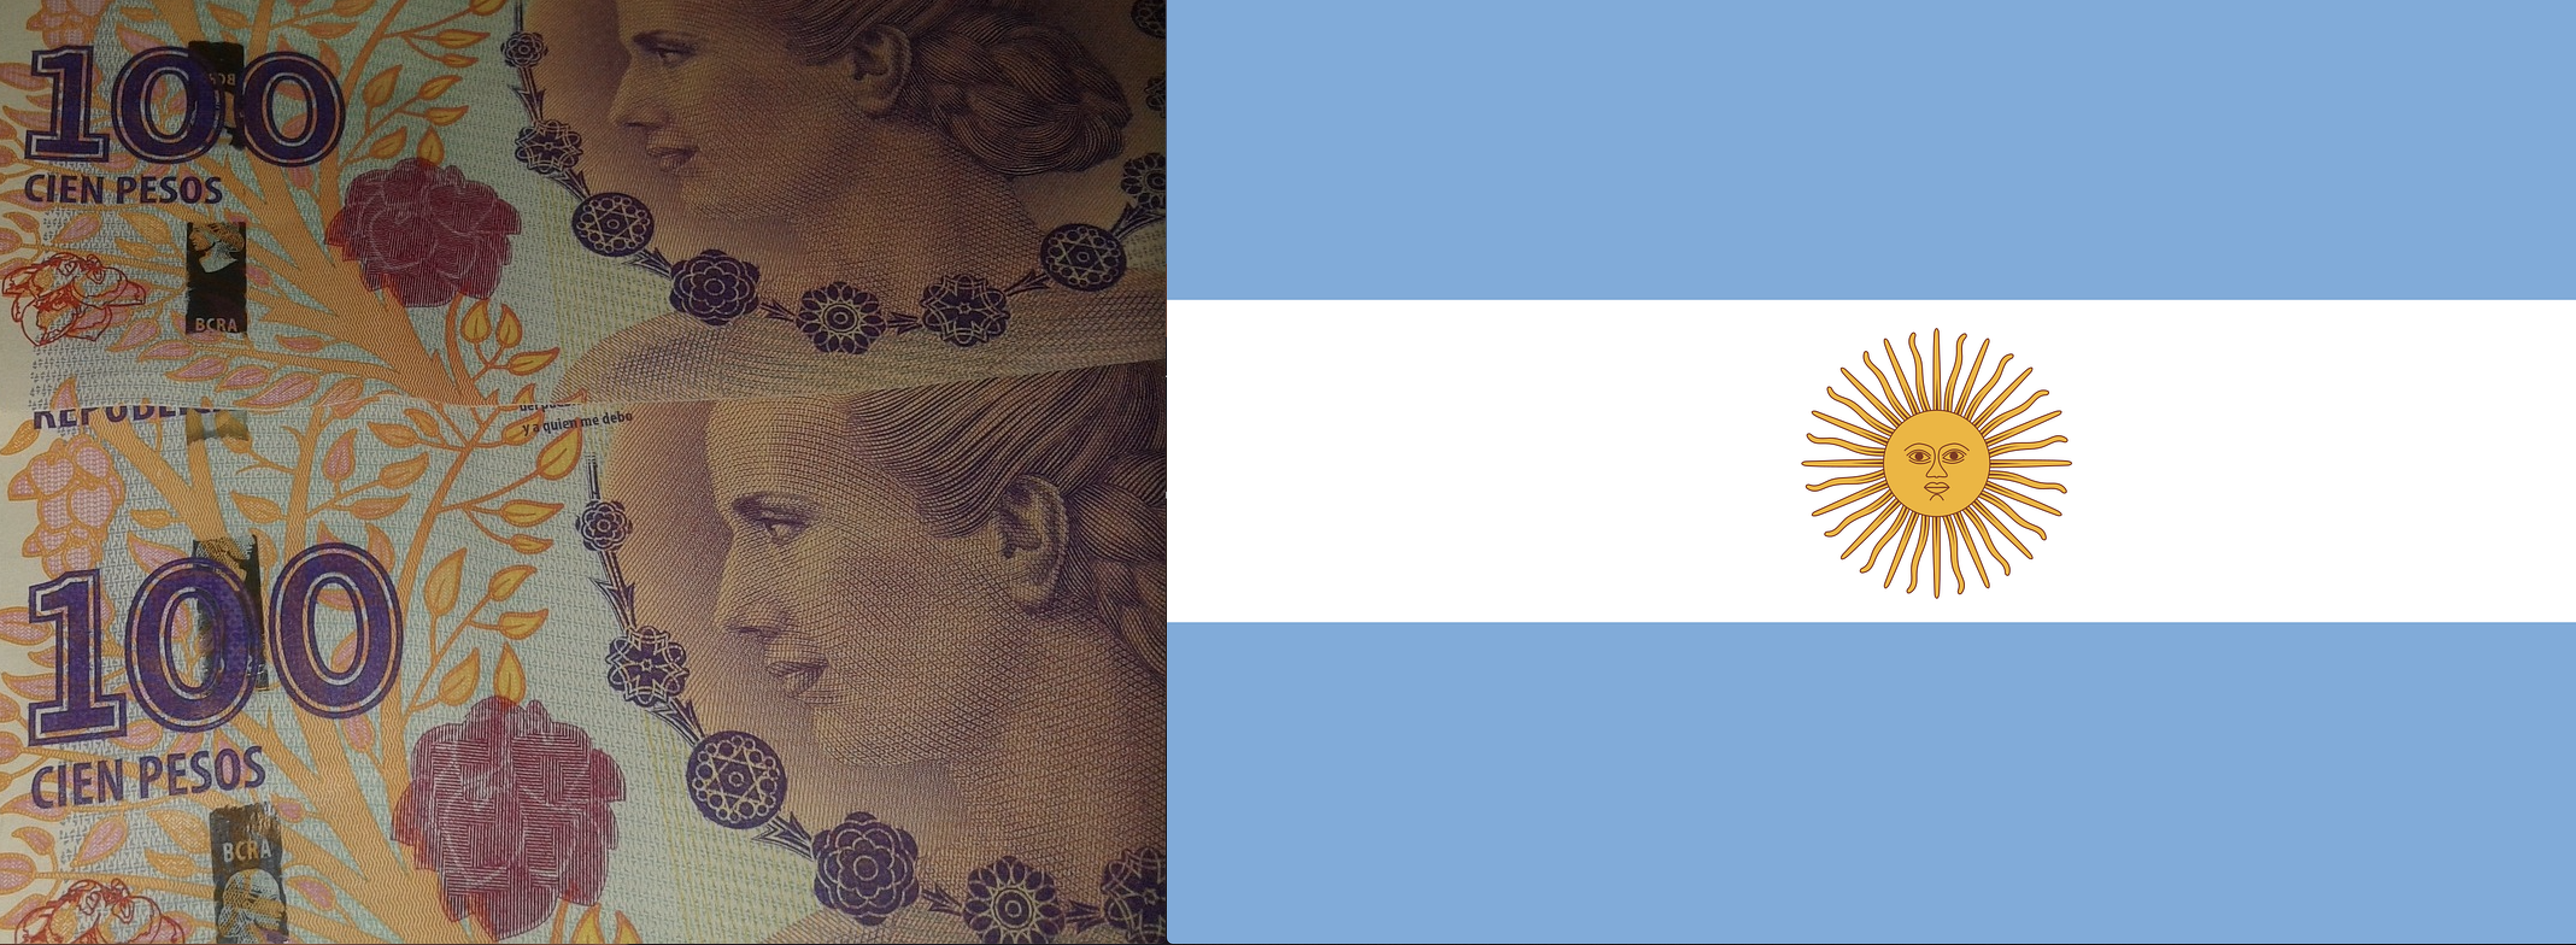 bandiera e pesos argentini